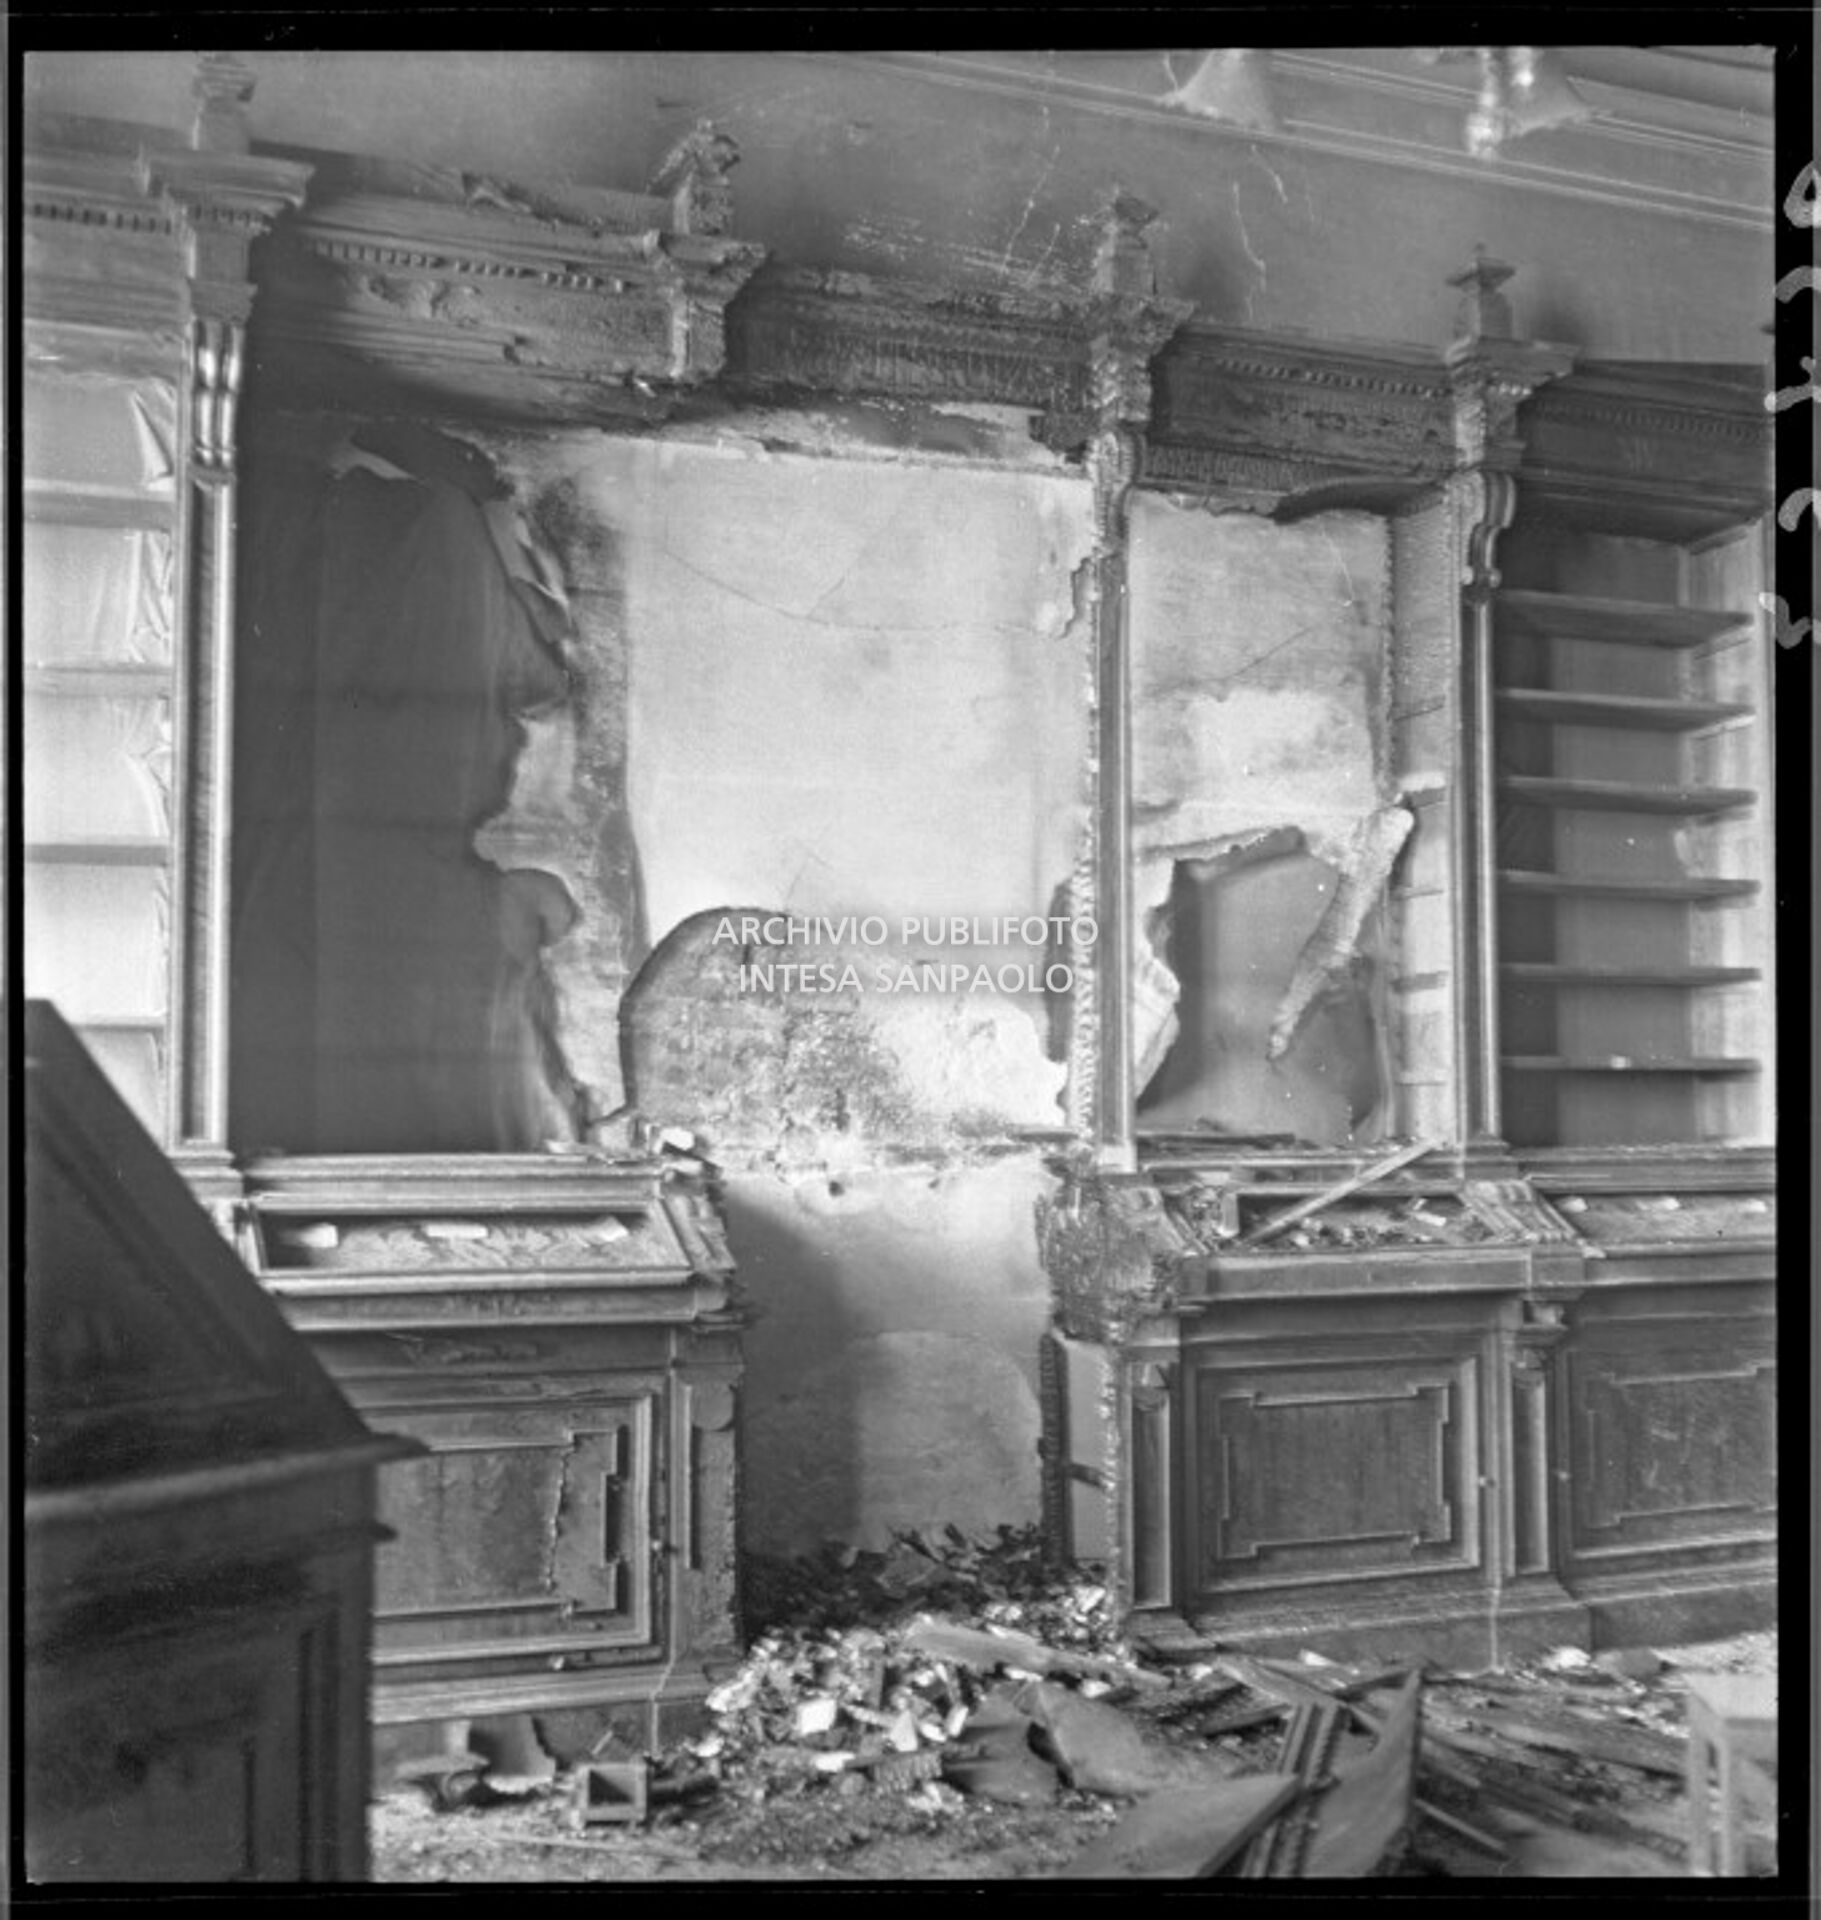 Arredi di una sala della Biblioteca Braidense distrutti dai bombardamenti